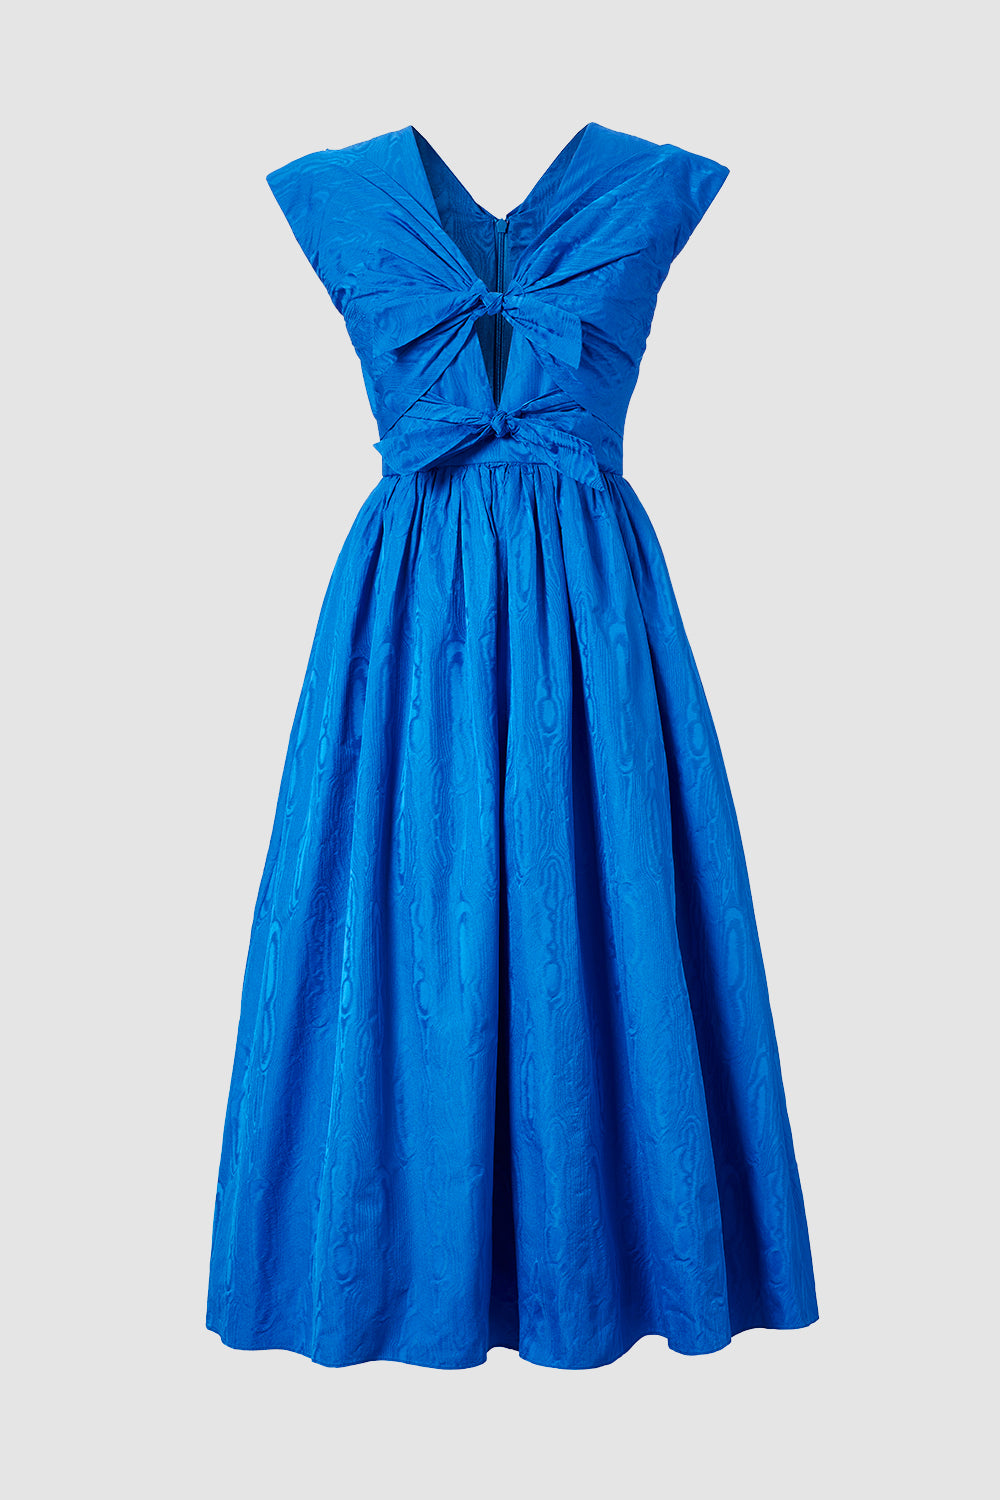 Cobalt Tabitha Dress